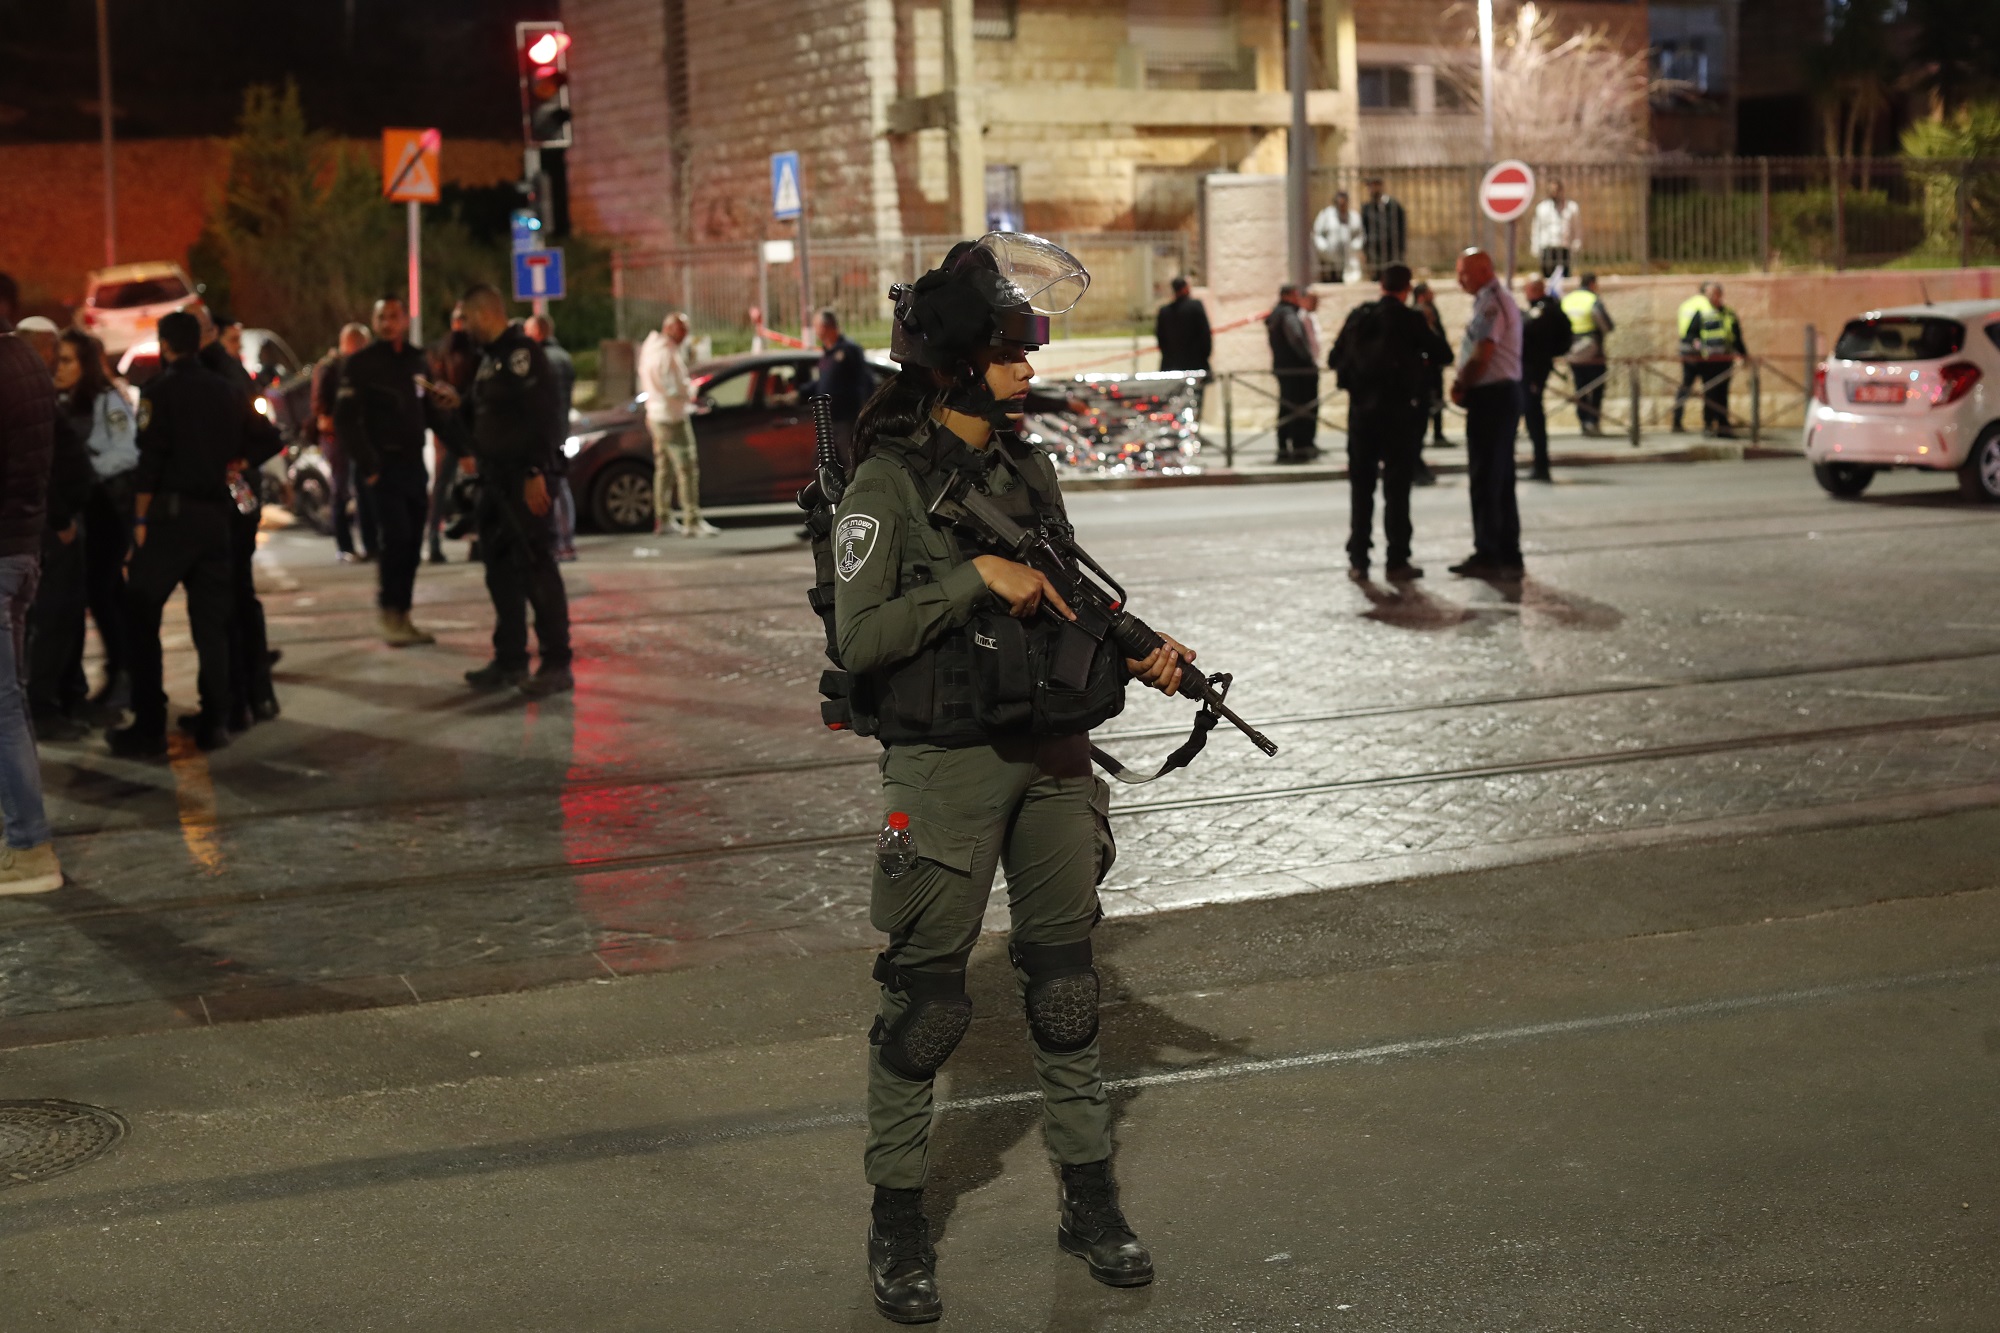 Ισραήλ-επίθεση σε συναγωγή: Σαράντα δύο άνθρωποι συνελήφθησαν